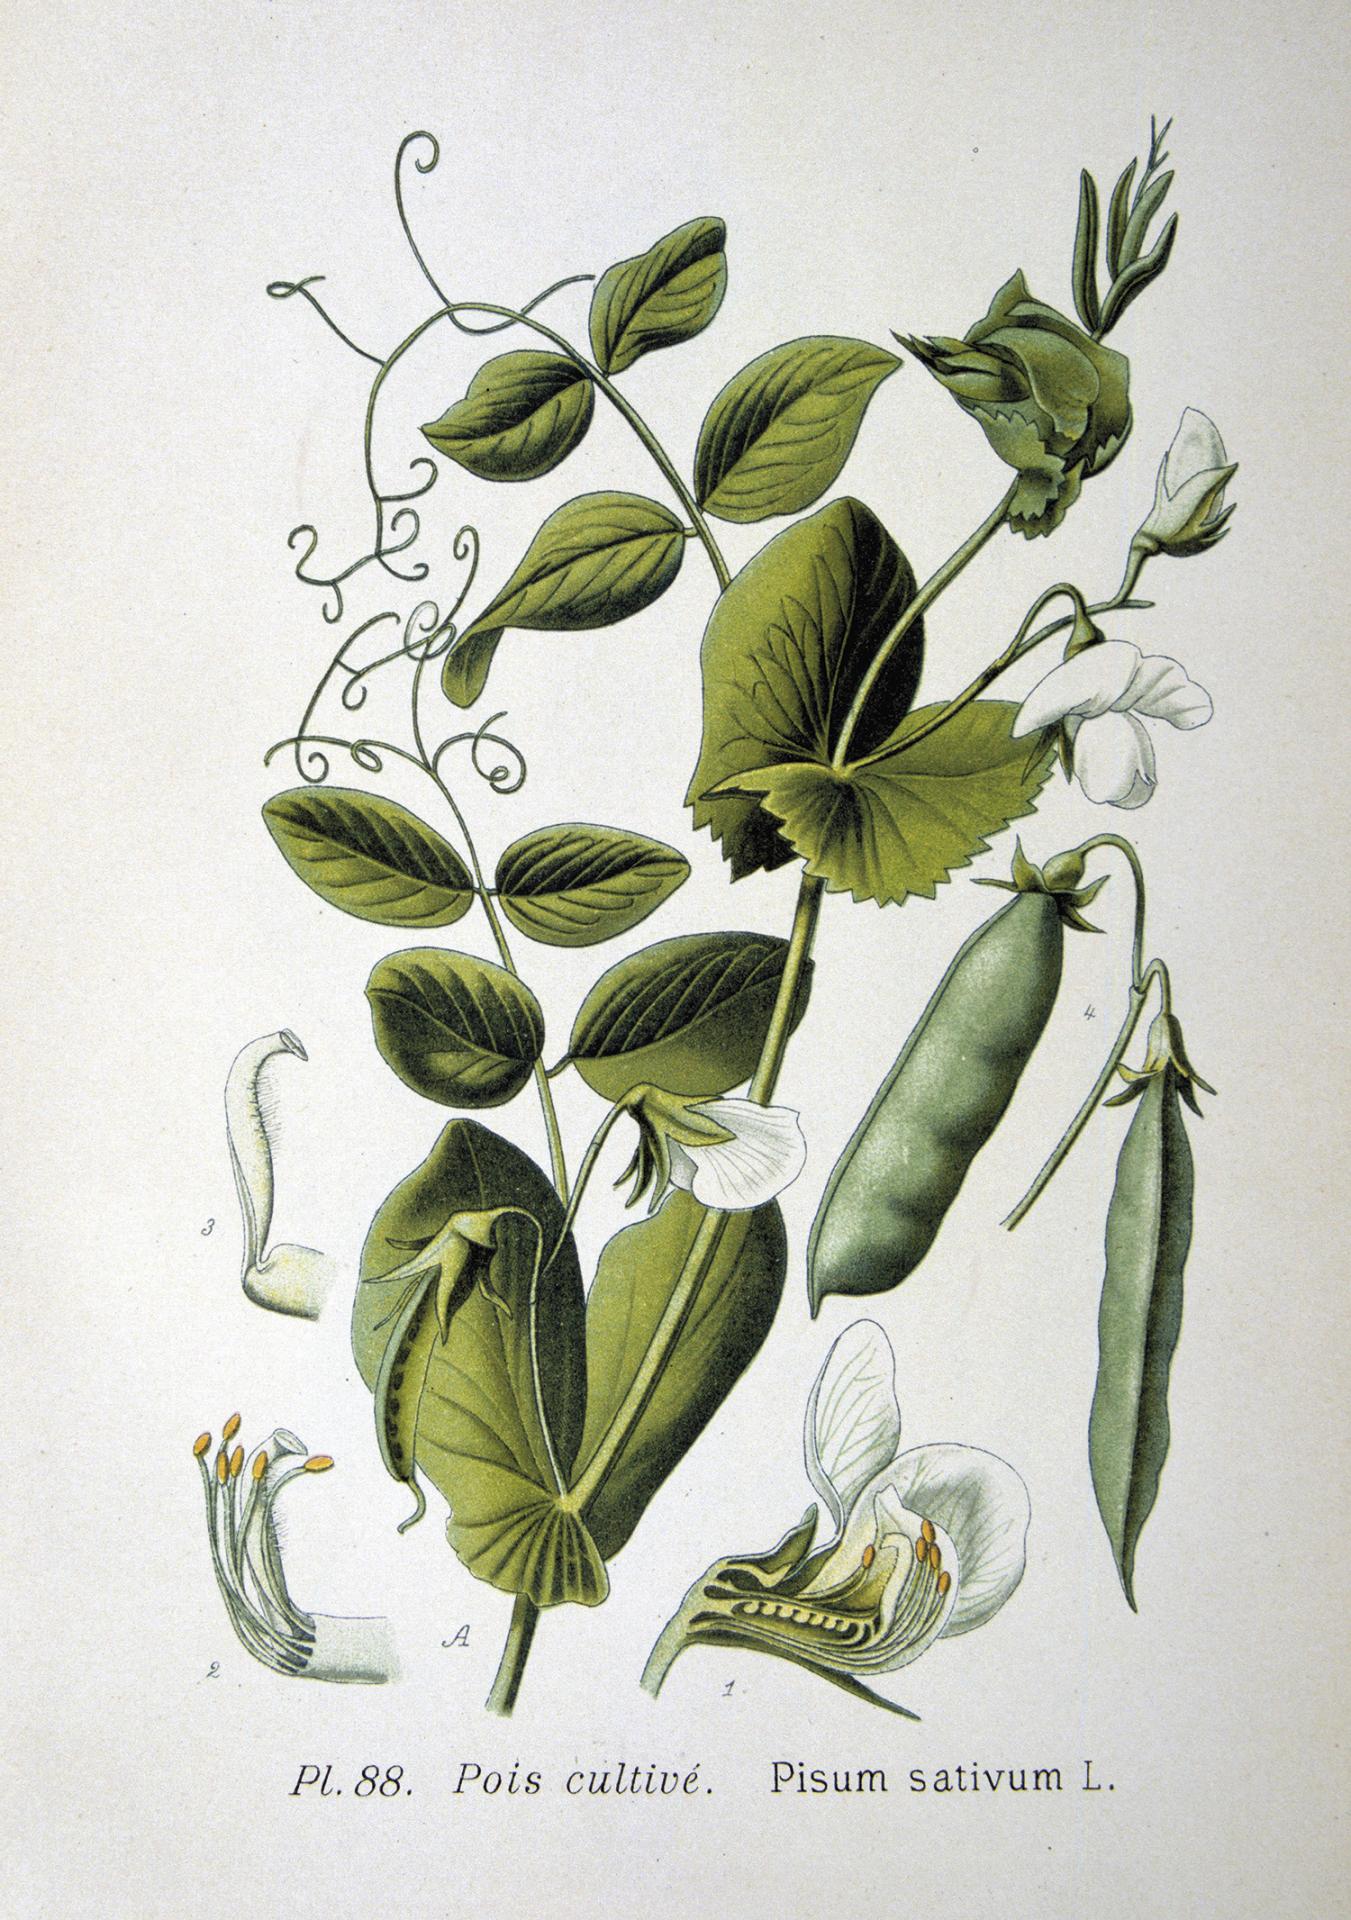 Hrach siaty z atlasu rastlín z 19. storočia. Mendel sa v rokoch 1856 – 1863 venoval kríženiu hrachu a sledovaniu potomstva. Na základe svojich pokusov formuloval pravidlá, ktoré poznáme ako Mendelove zákony dedičnosti.